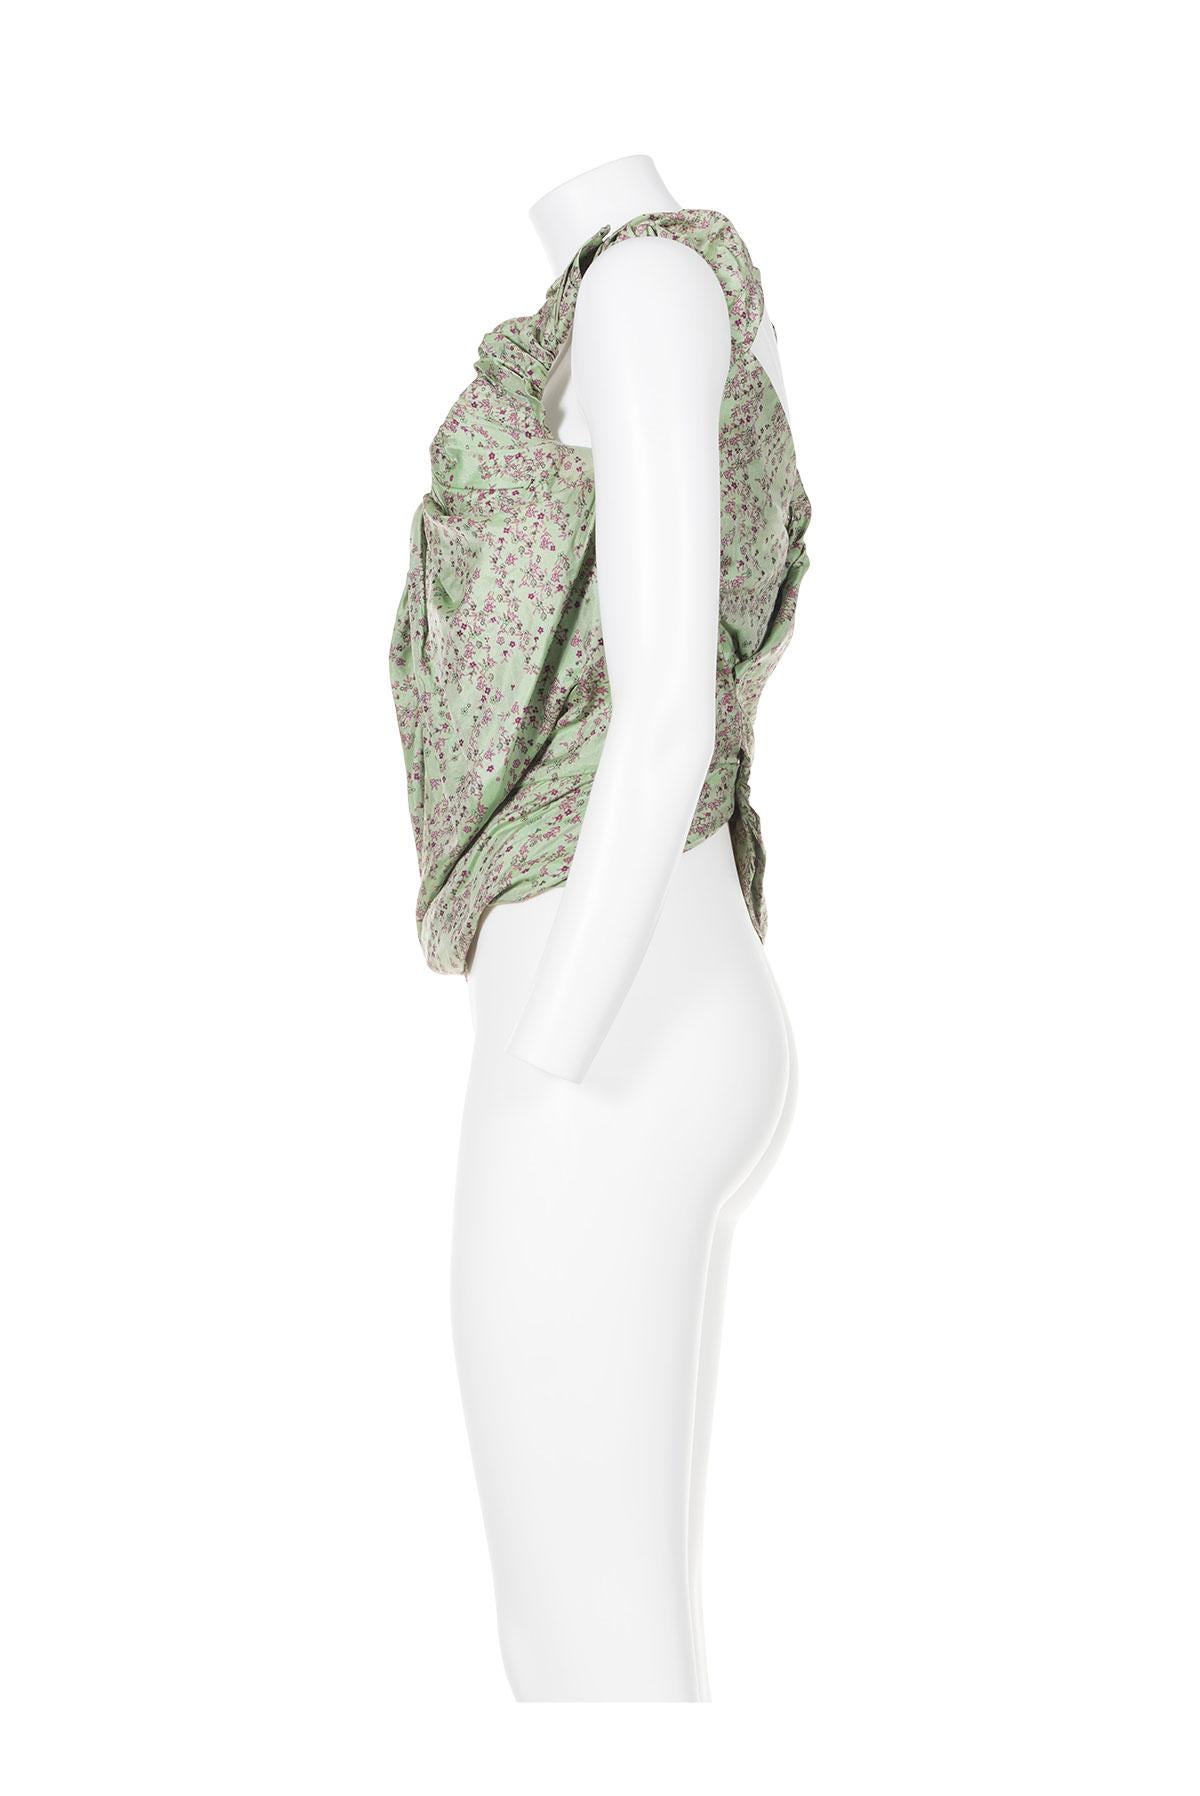 Das ikonische Bustier aus dem Jahr 2000 von Vivienne Westwood.
Floraler Jacquard-Stoff.
Gerüschte Schulterriemen.
Versteckter Reißverschluss und Walknochen.
Druckknöpfe am Rücken.
Das Etikett mit der Zusammensetzung fehlt, es scheint aus Polyester